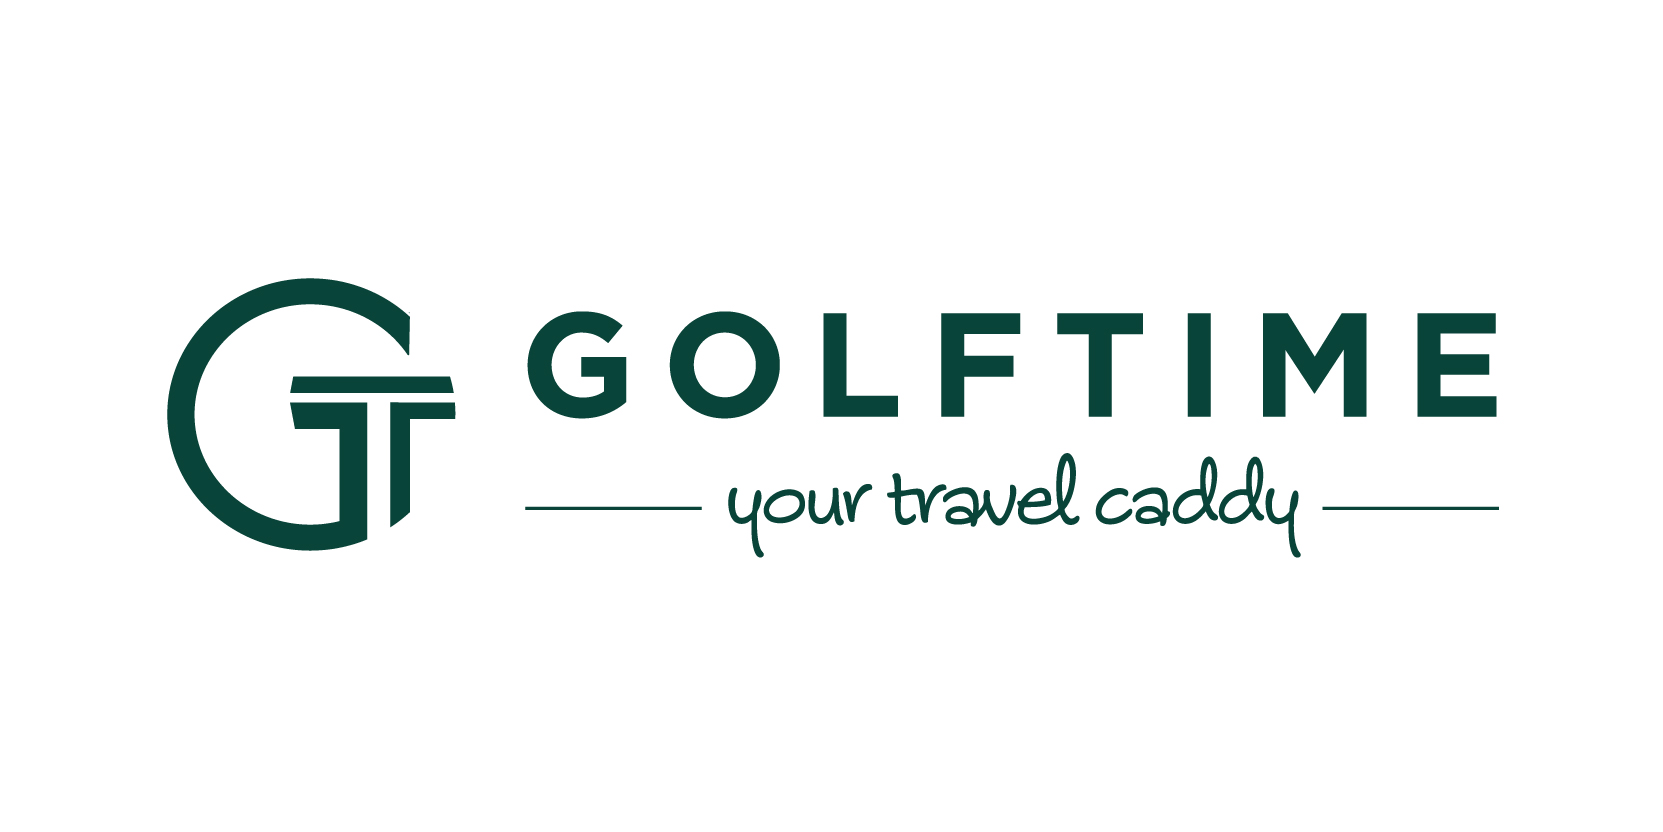 Golftime.nl reviews, beoordelingen en ervaringen